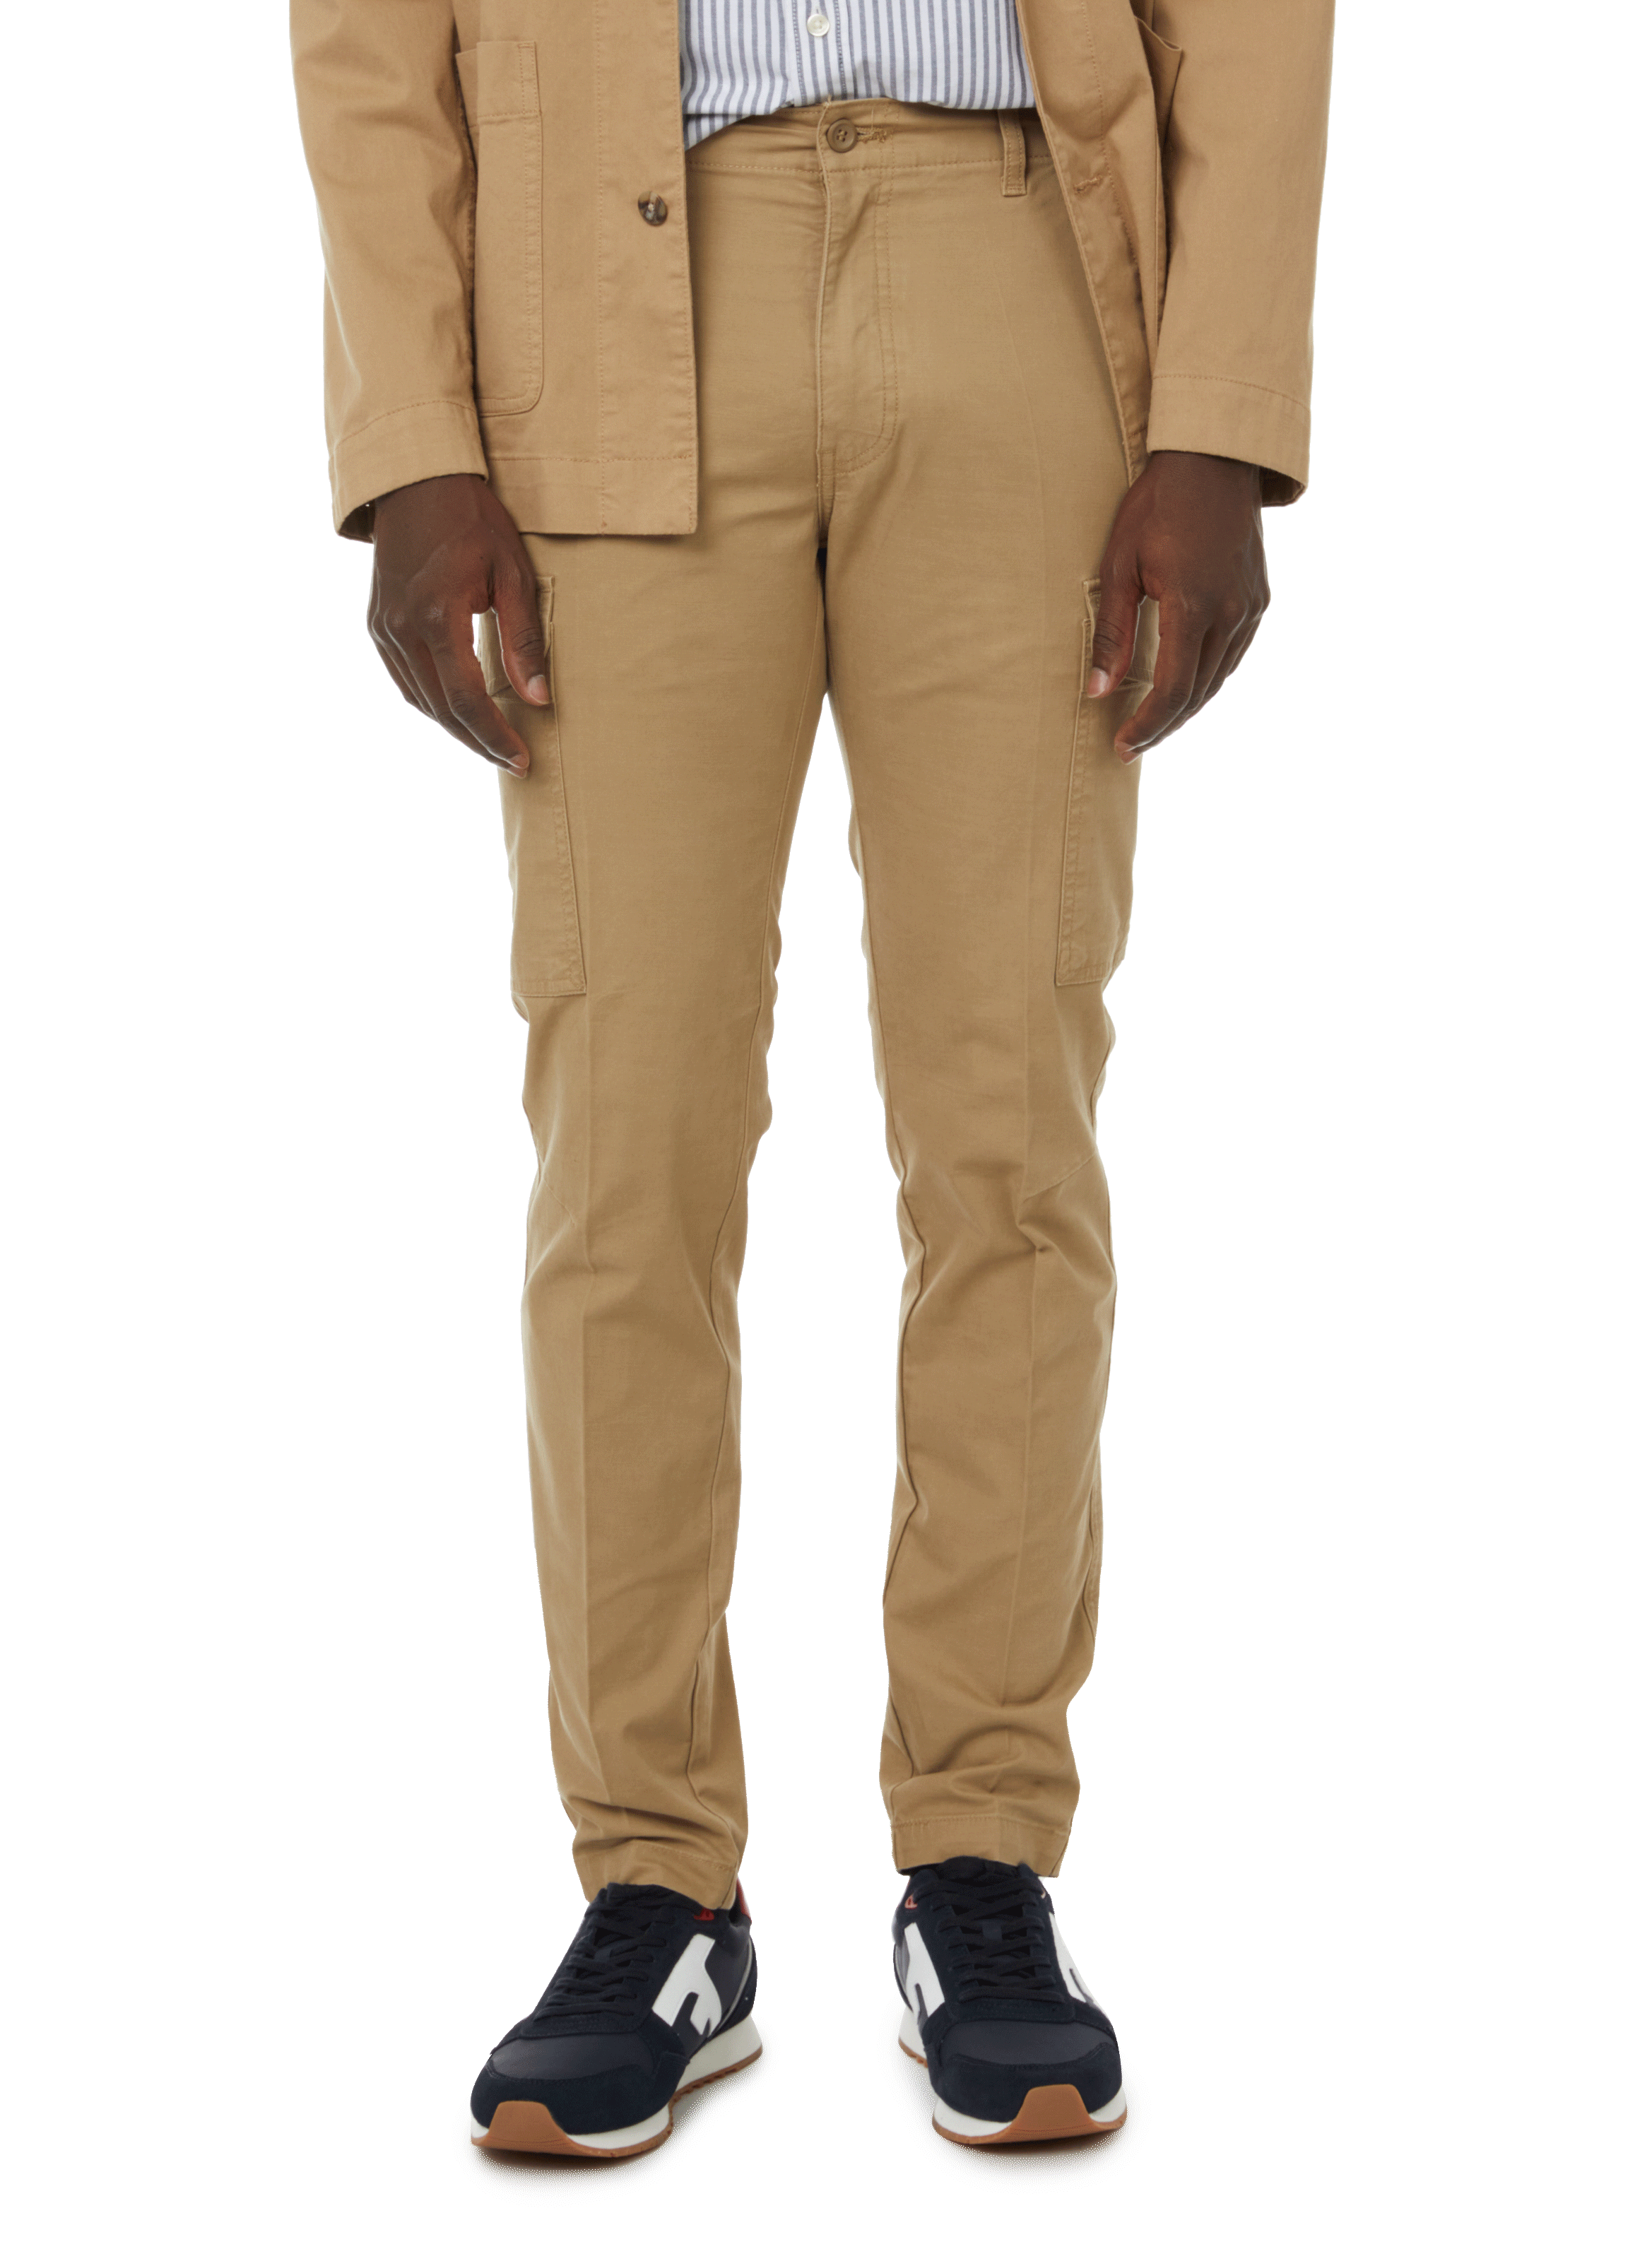 Dockers Men's Slim Fit Signature Khaki Lux Cotton Stretch Pants, Cloud, 28W  x 30L at Amazon Men's Clothing store